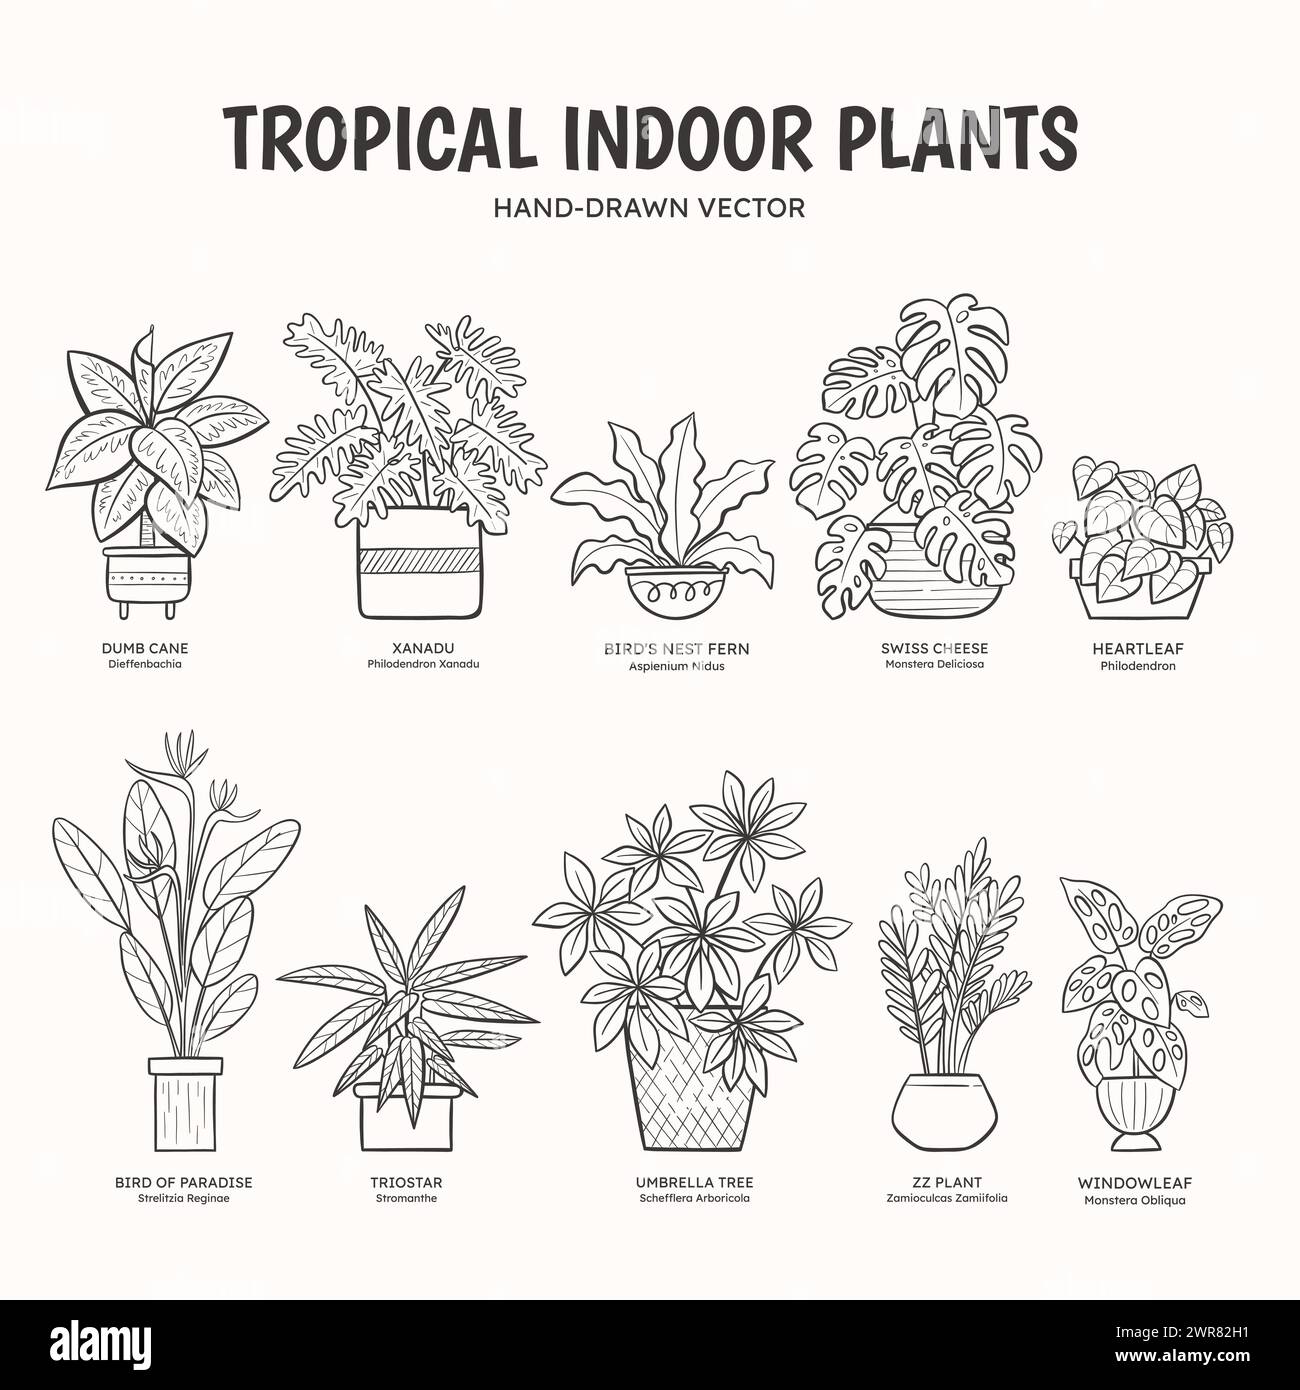 Sammlung tropischer Doodle-Pflanzen für Innenräume. Englische und wissenschaftliche Namen unter der Pflanzenzeichnung. Lineart-Vektor-Illustration. Stock Vektor